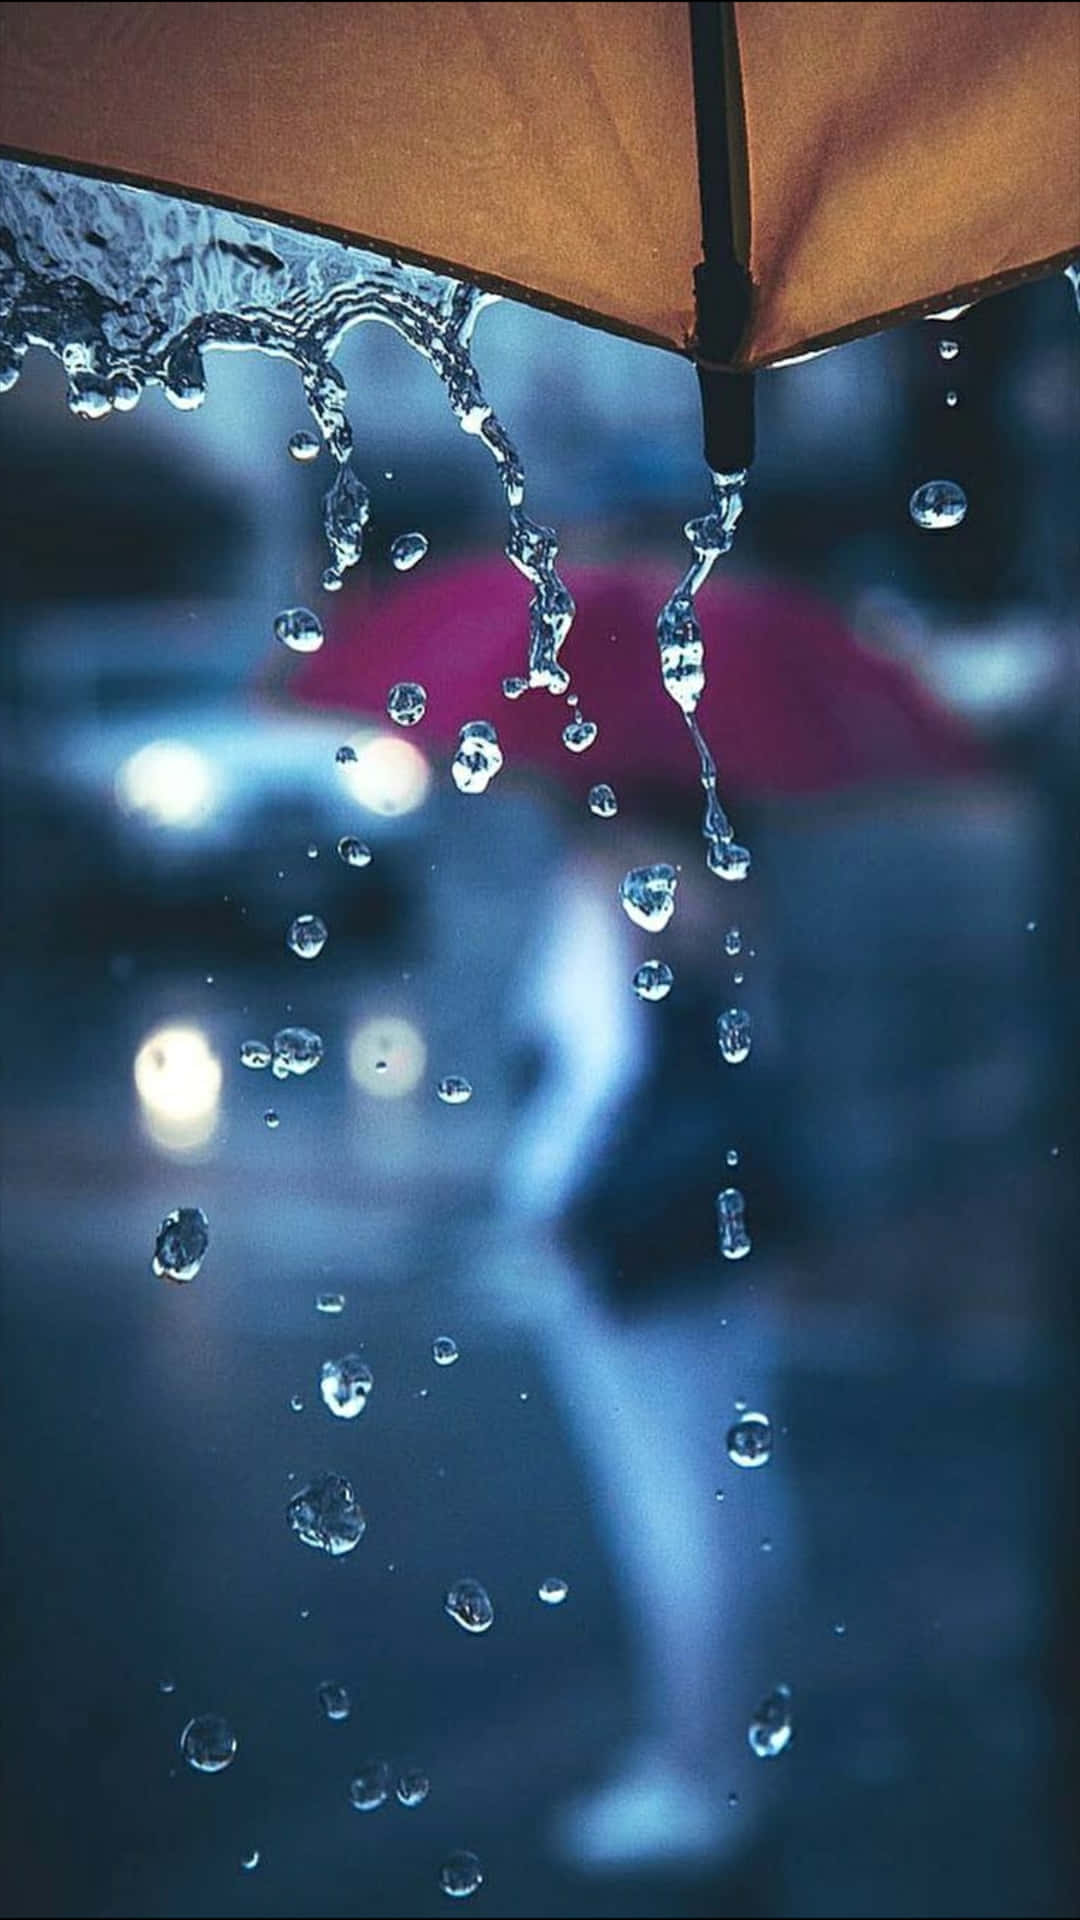 Imagende Un Paraguas Con Bordes En Un Día Lluvioso Y Con Lluvia